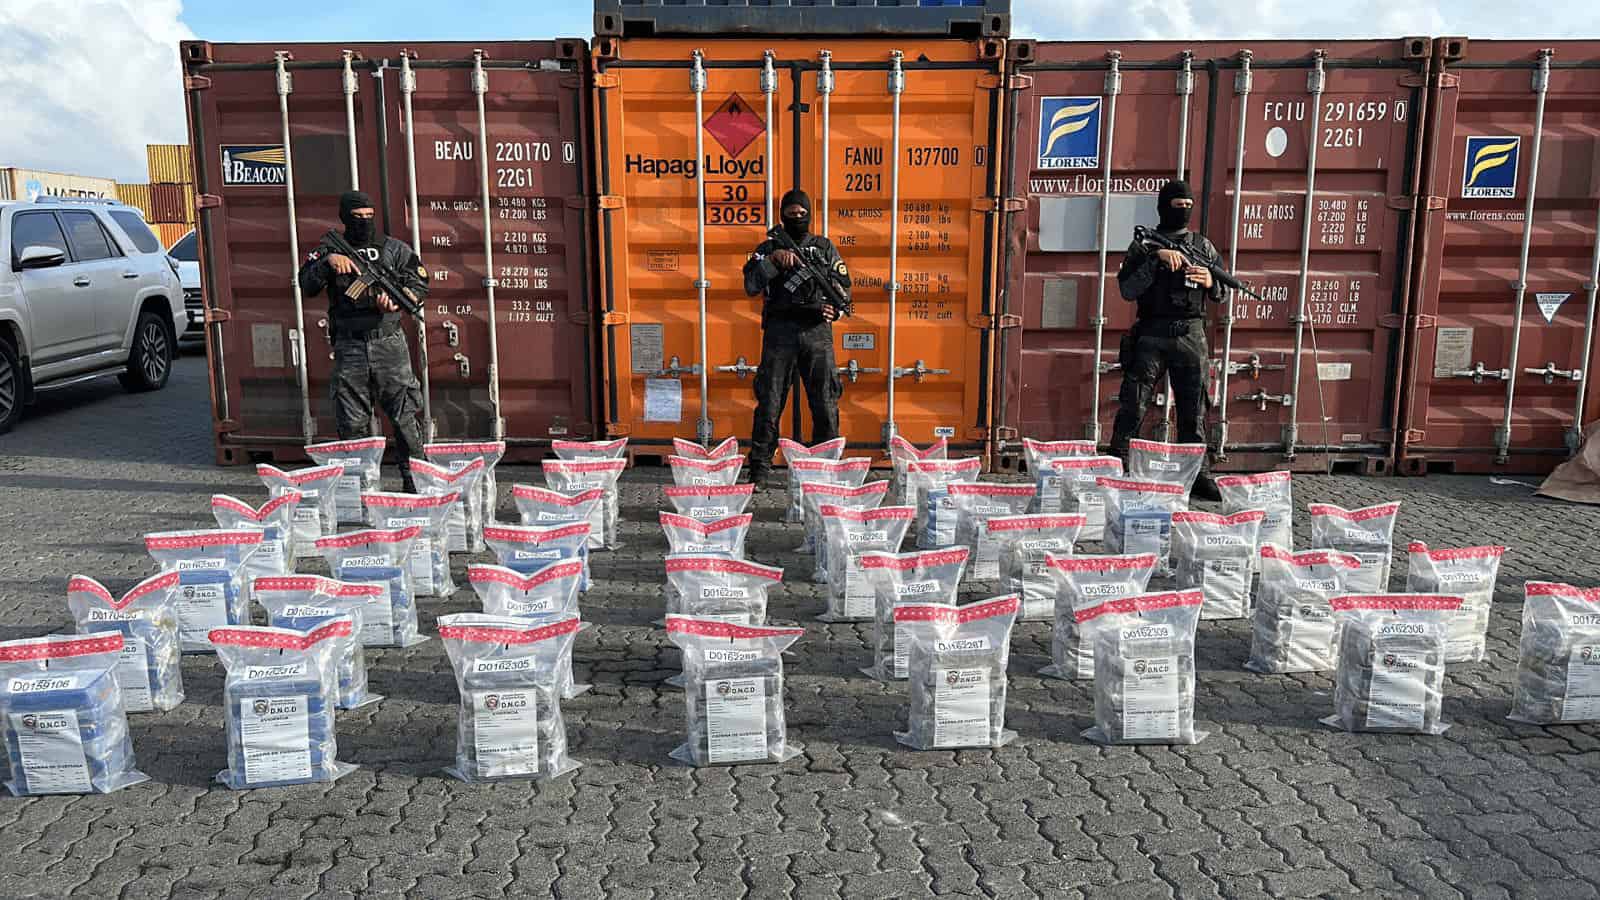 Frustran envío 278 paquetes de cocaína a Francia